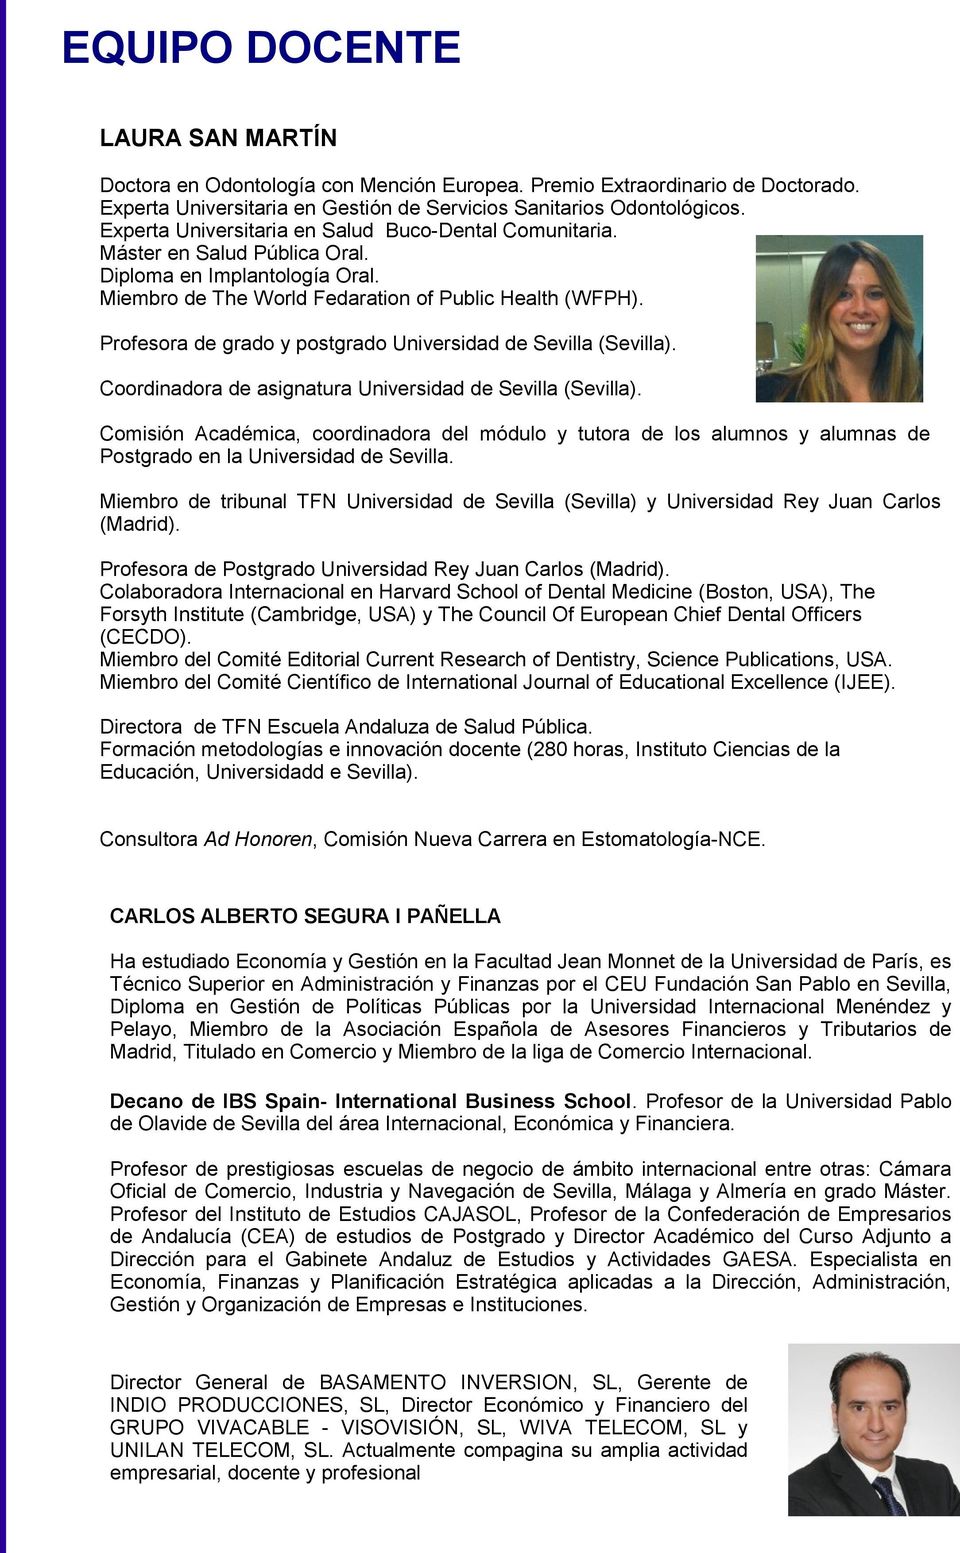 Profesora de grado y postgrado Universidad de Sevilla (Sevilla). Coordinadora de asignatura Universidad de Sevilla (Sevilla).